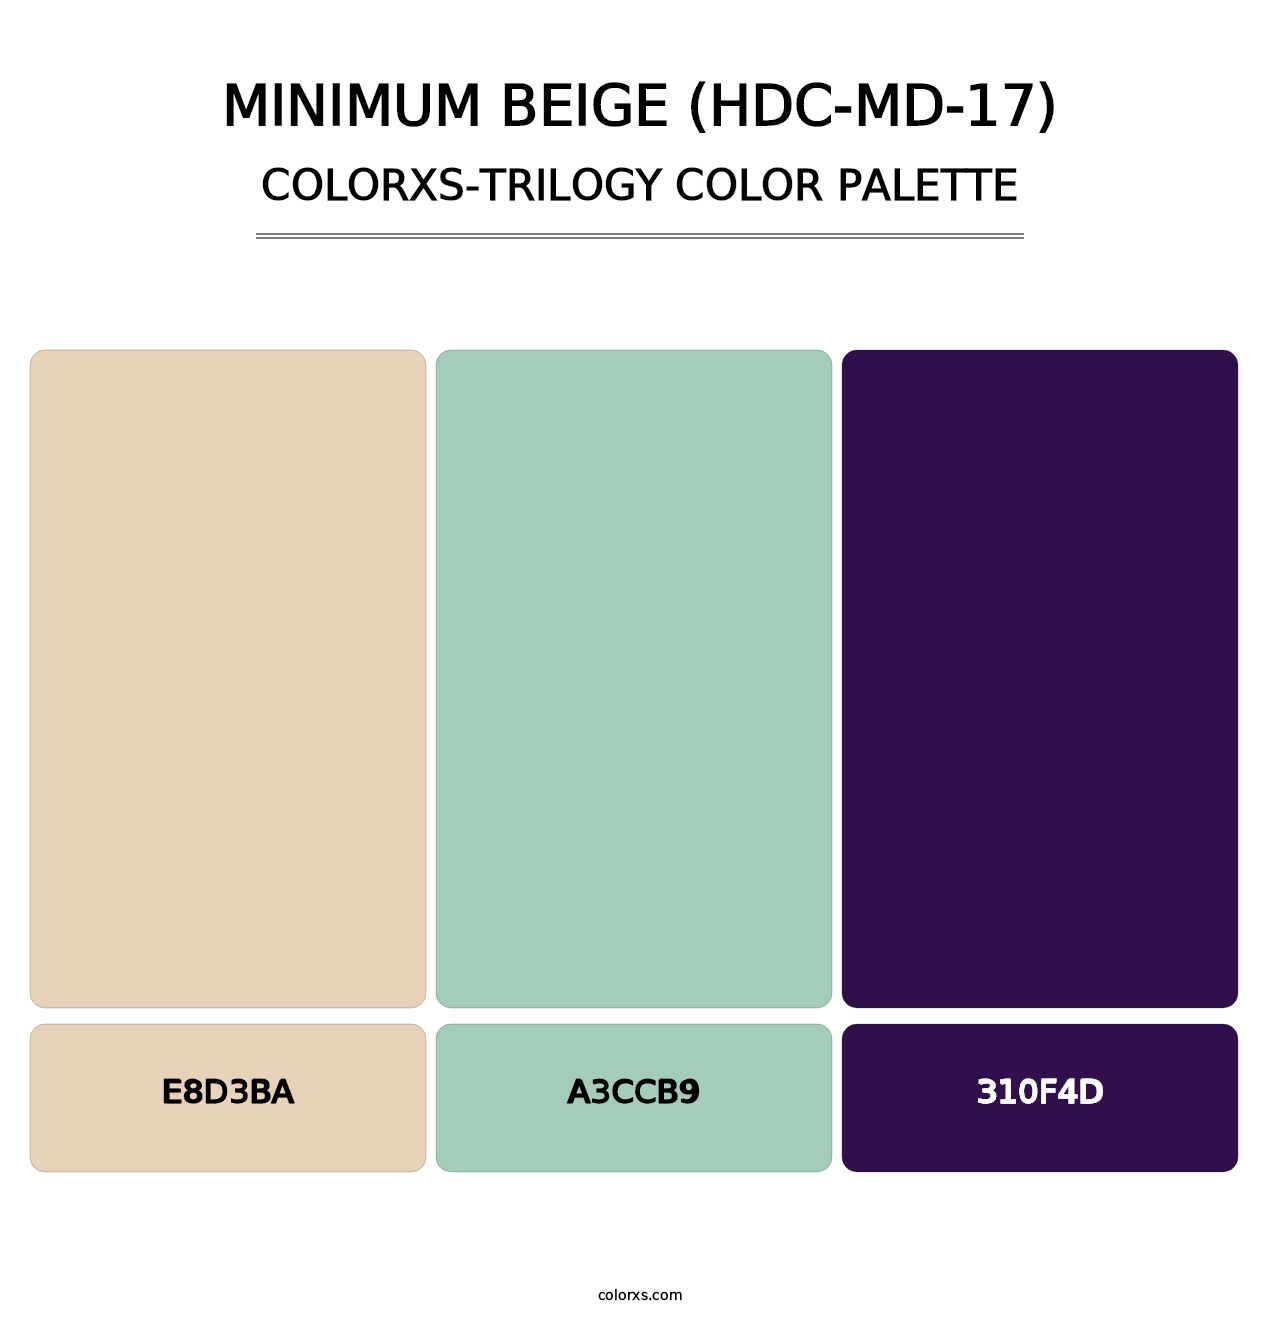 Minimum Beige (HDC-MD-17) - Colorxs Trilogy Palette